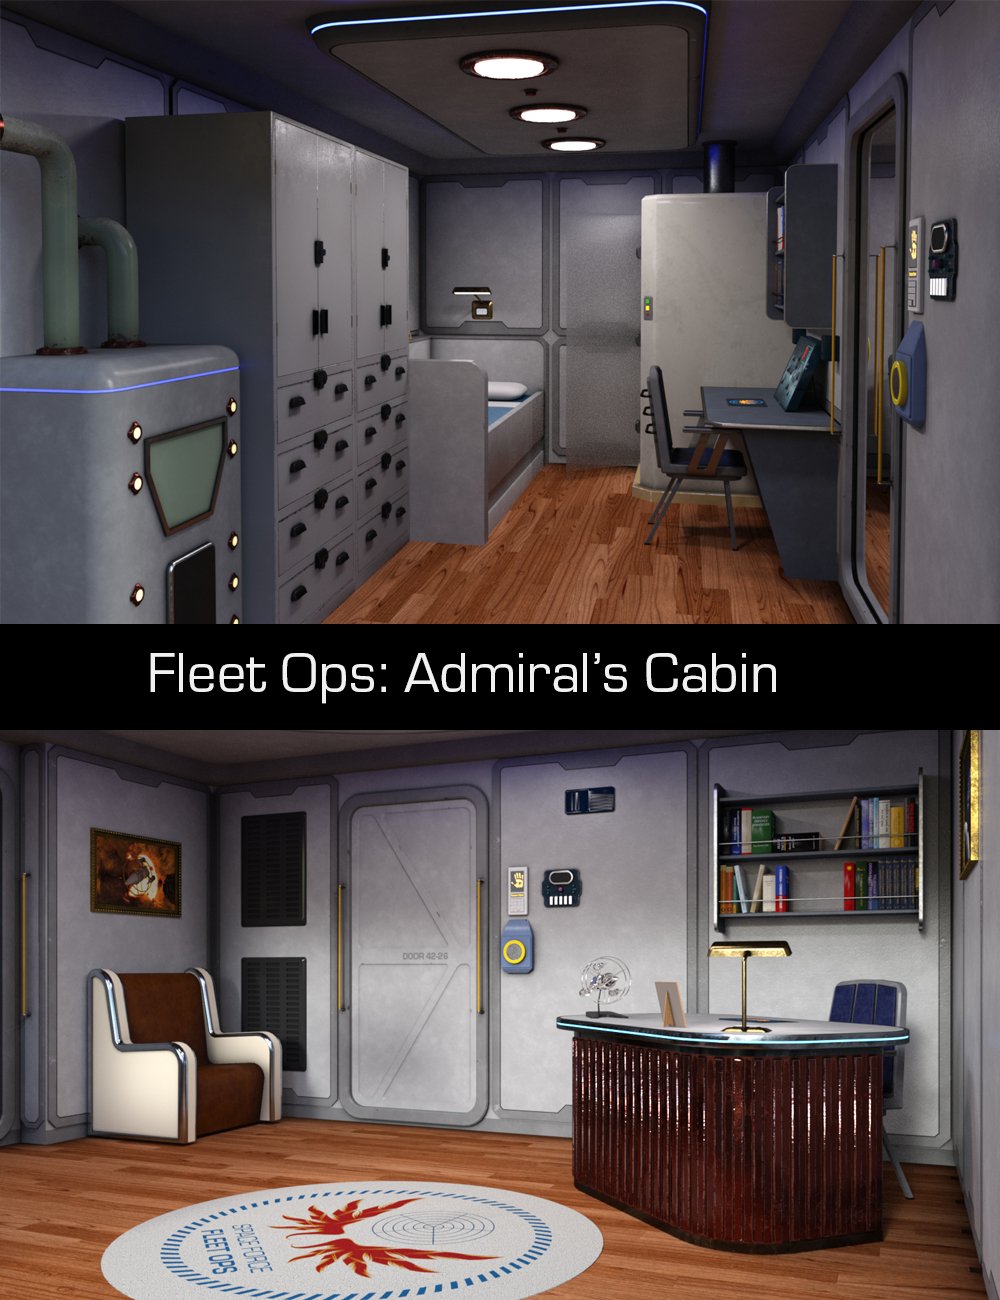 Fleet Ops: Admiral's Cabin by: TangoAlpha, 3D Models by Daz 3D